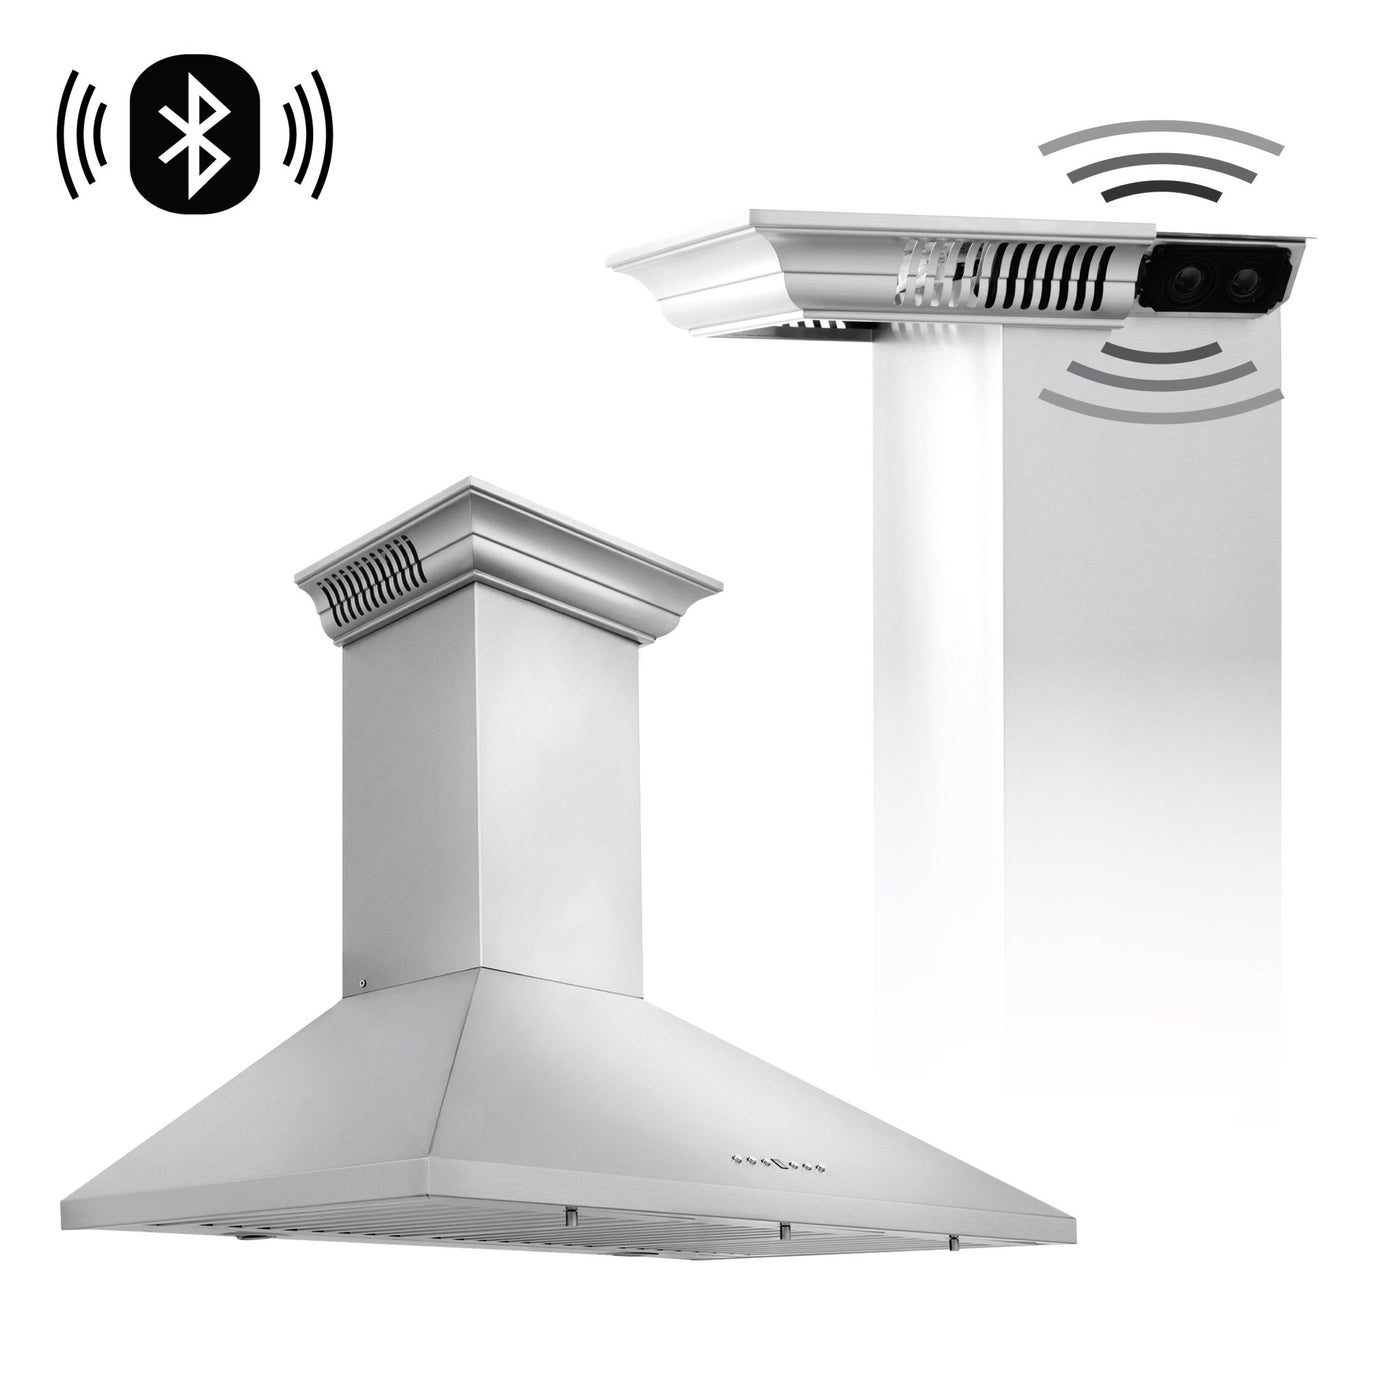 ZLINE Kitchen and Bath, ZLINE Wall Mount Range Hood In Stainless Steel With Built-In CrownSound® Bluetooth Speakers (KL2CRN-BT), KL2CRN-BT-30,